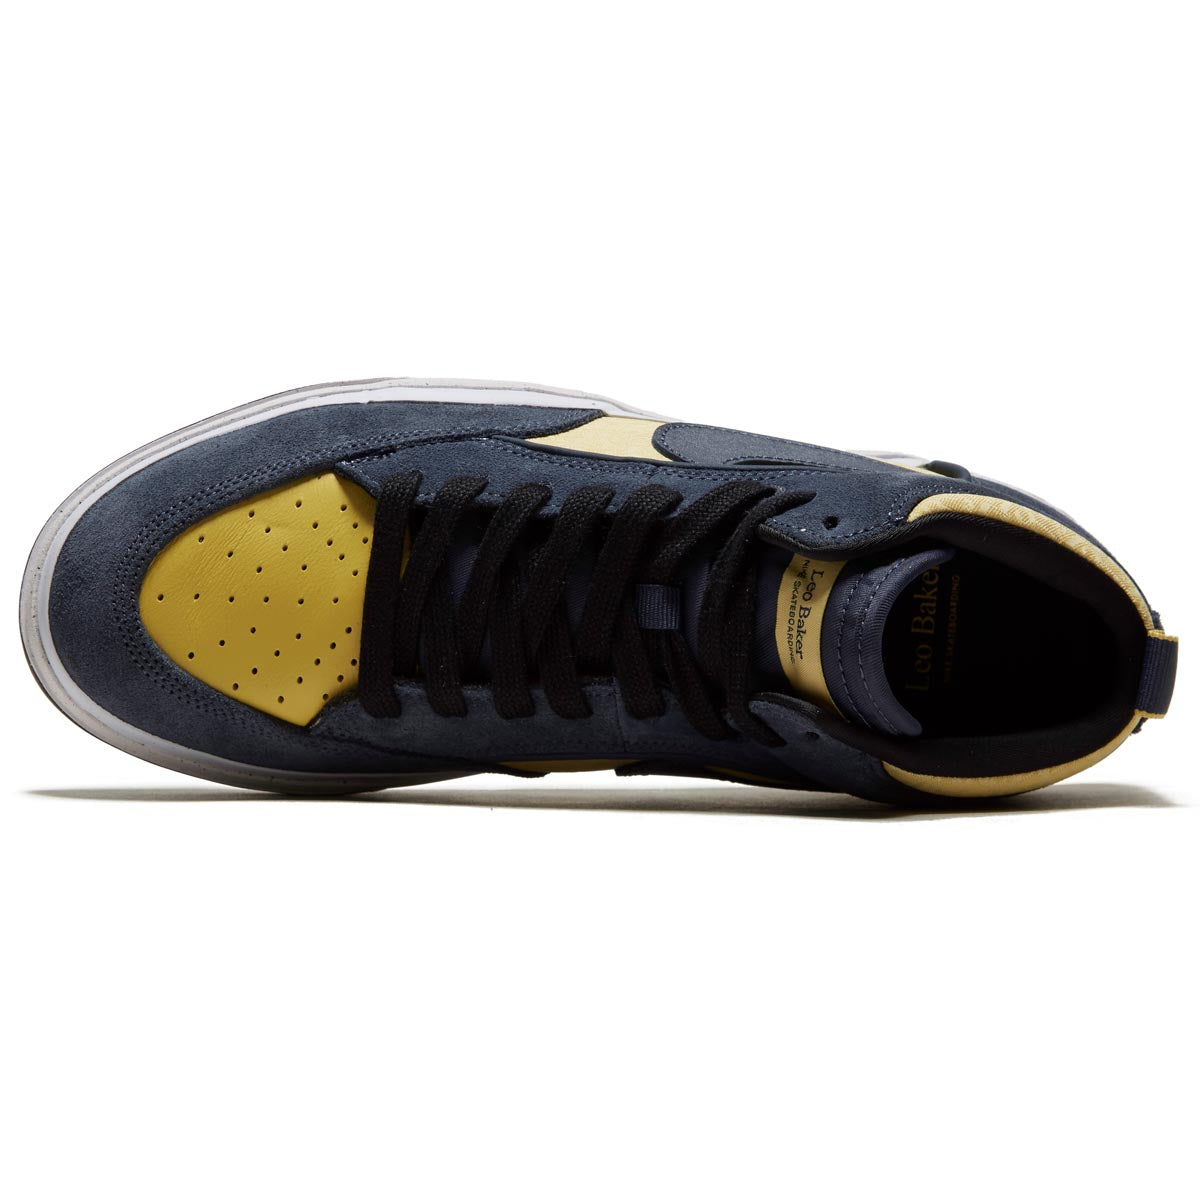 Nike SB React Leo Shoes - Thunder Blue/Thunder Blue/Saturn Gold image 3